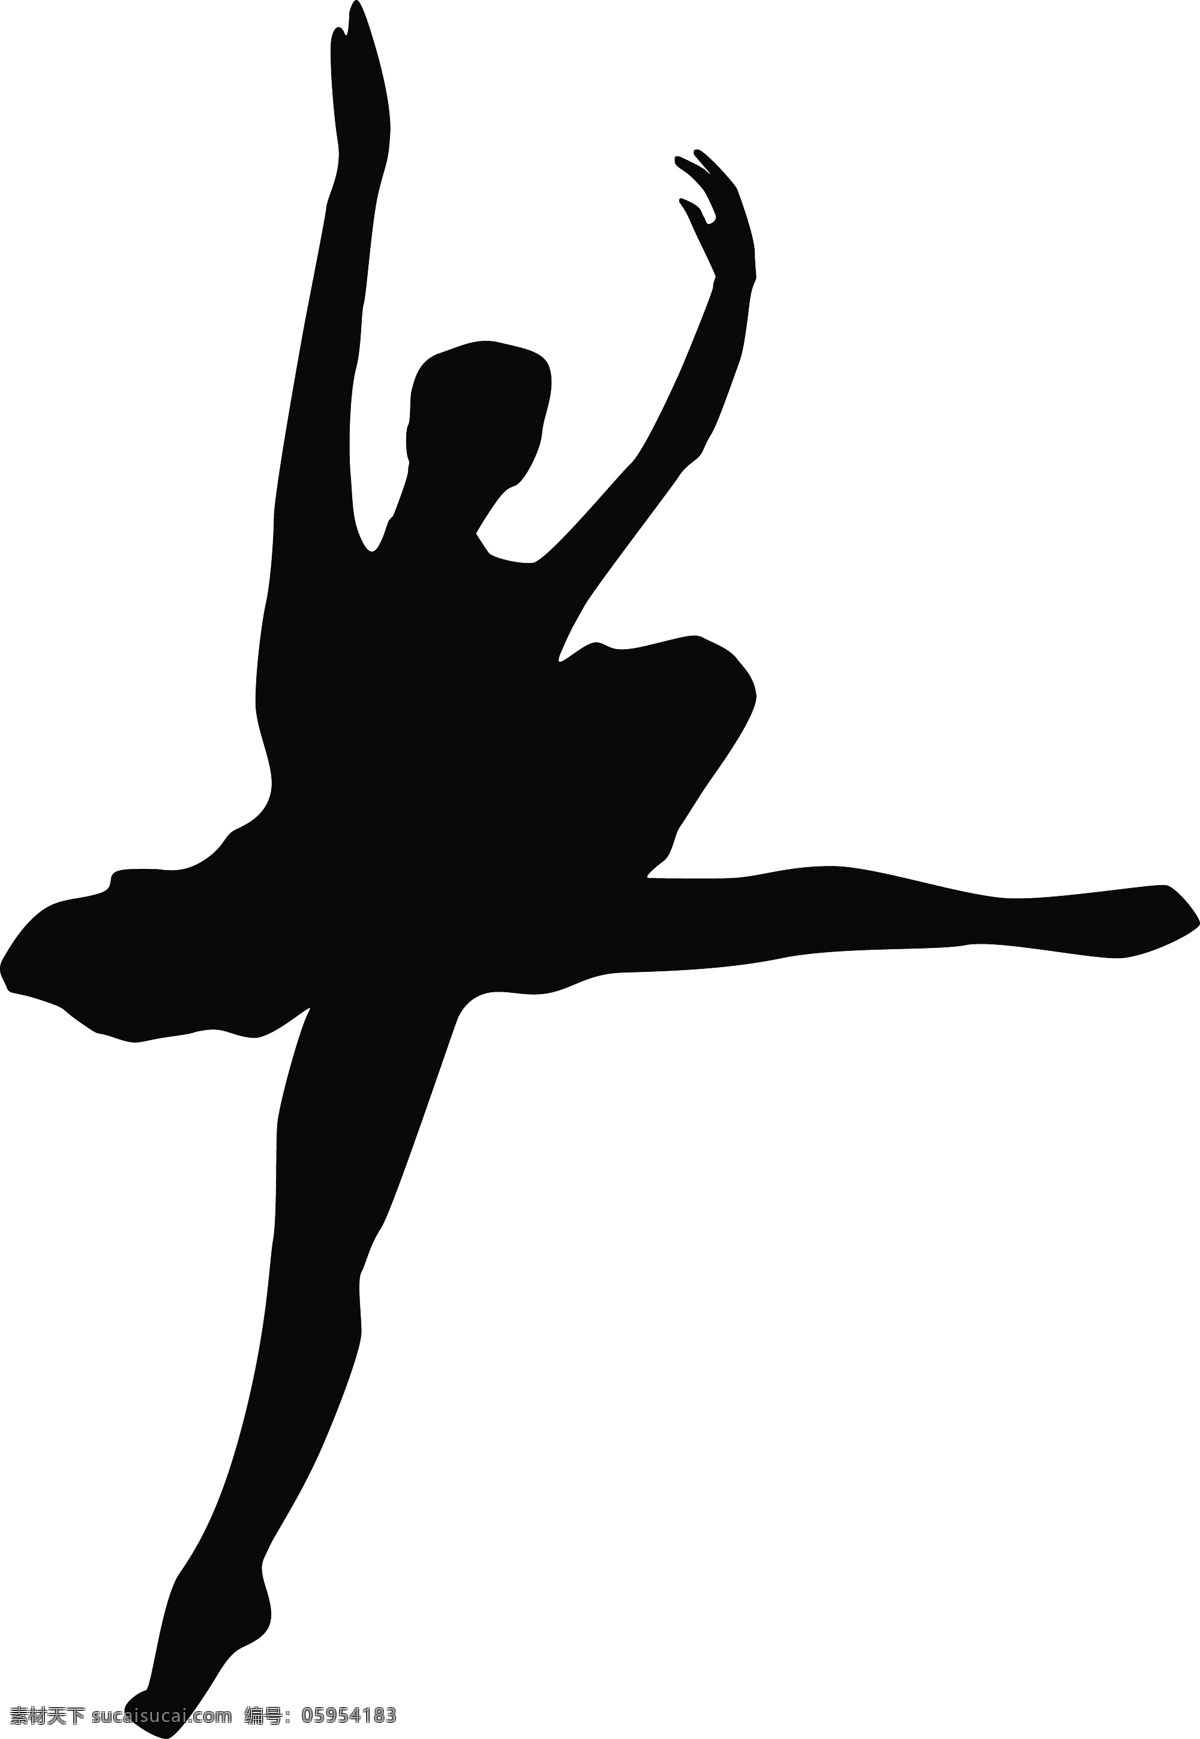 舞蹈班 招生 黑白 剪影 舞蹈训练 芭蕾舞 人物 图案 女生 宣传 手绘 海报 舞蹈 装饰 跳舞 轮廓